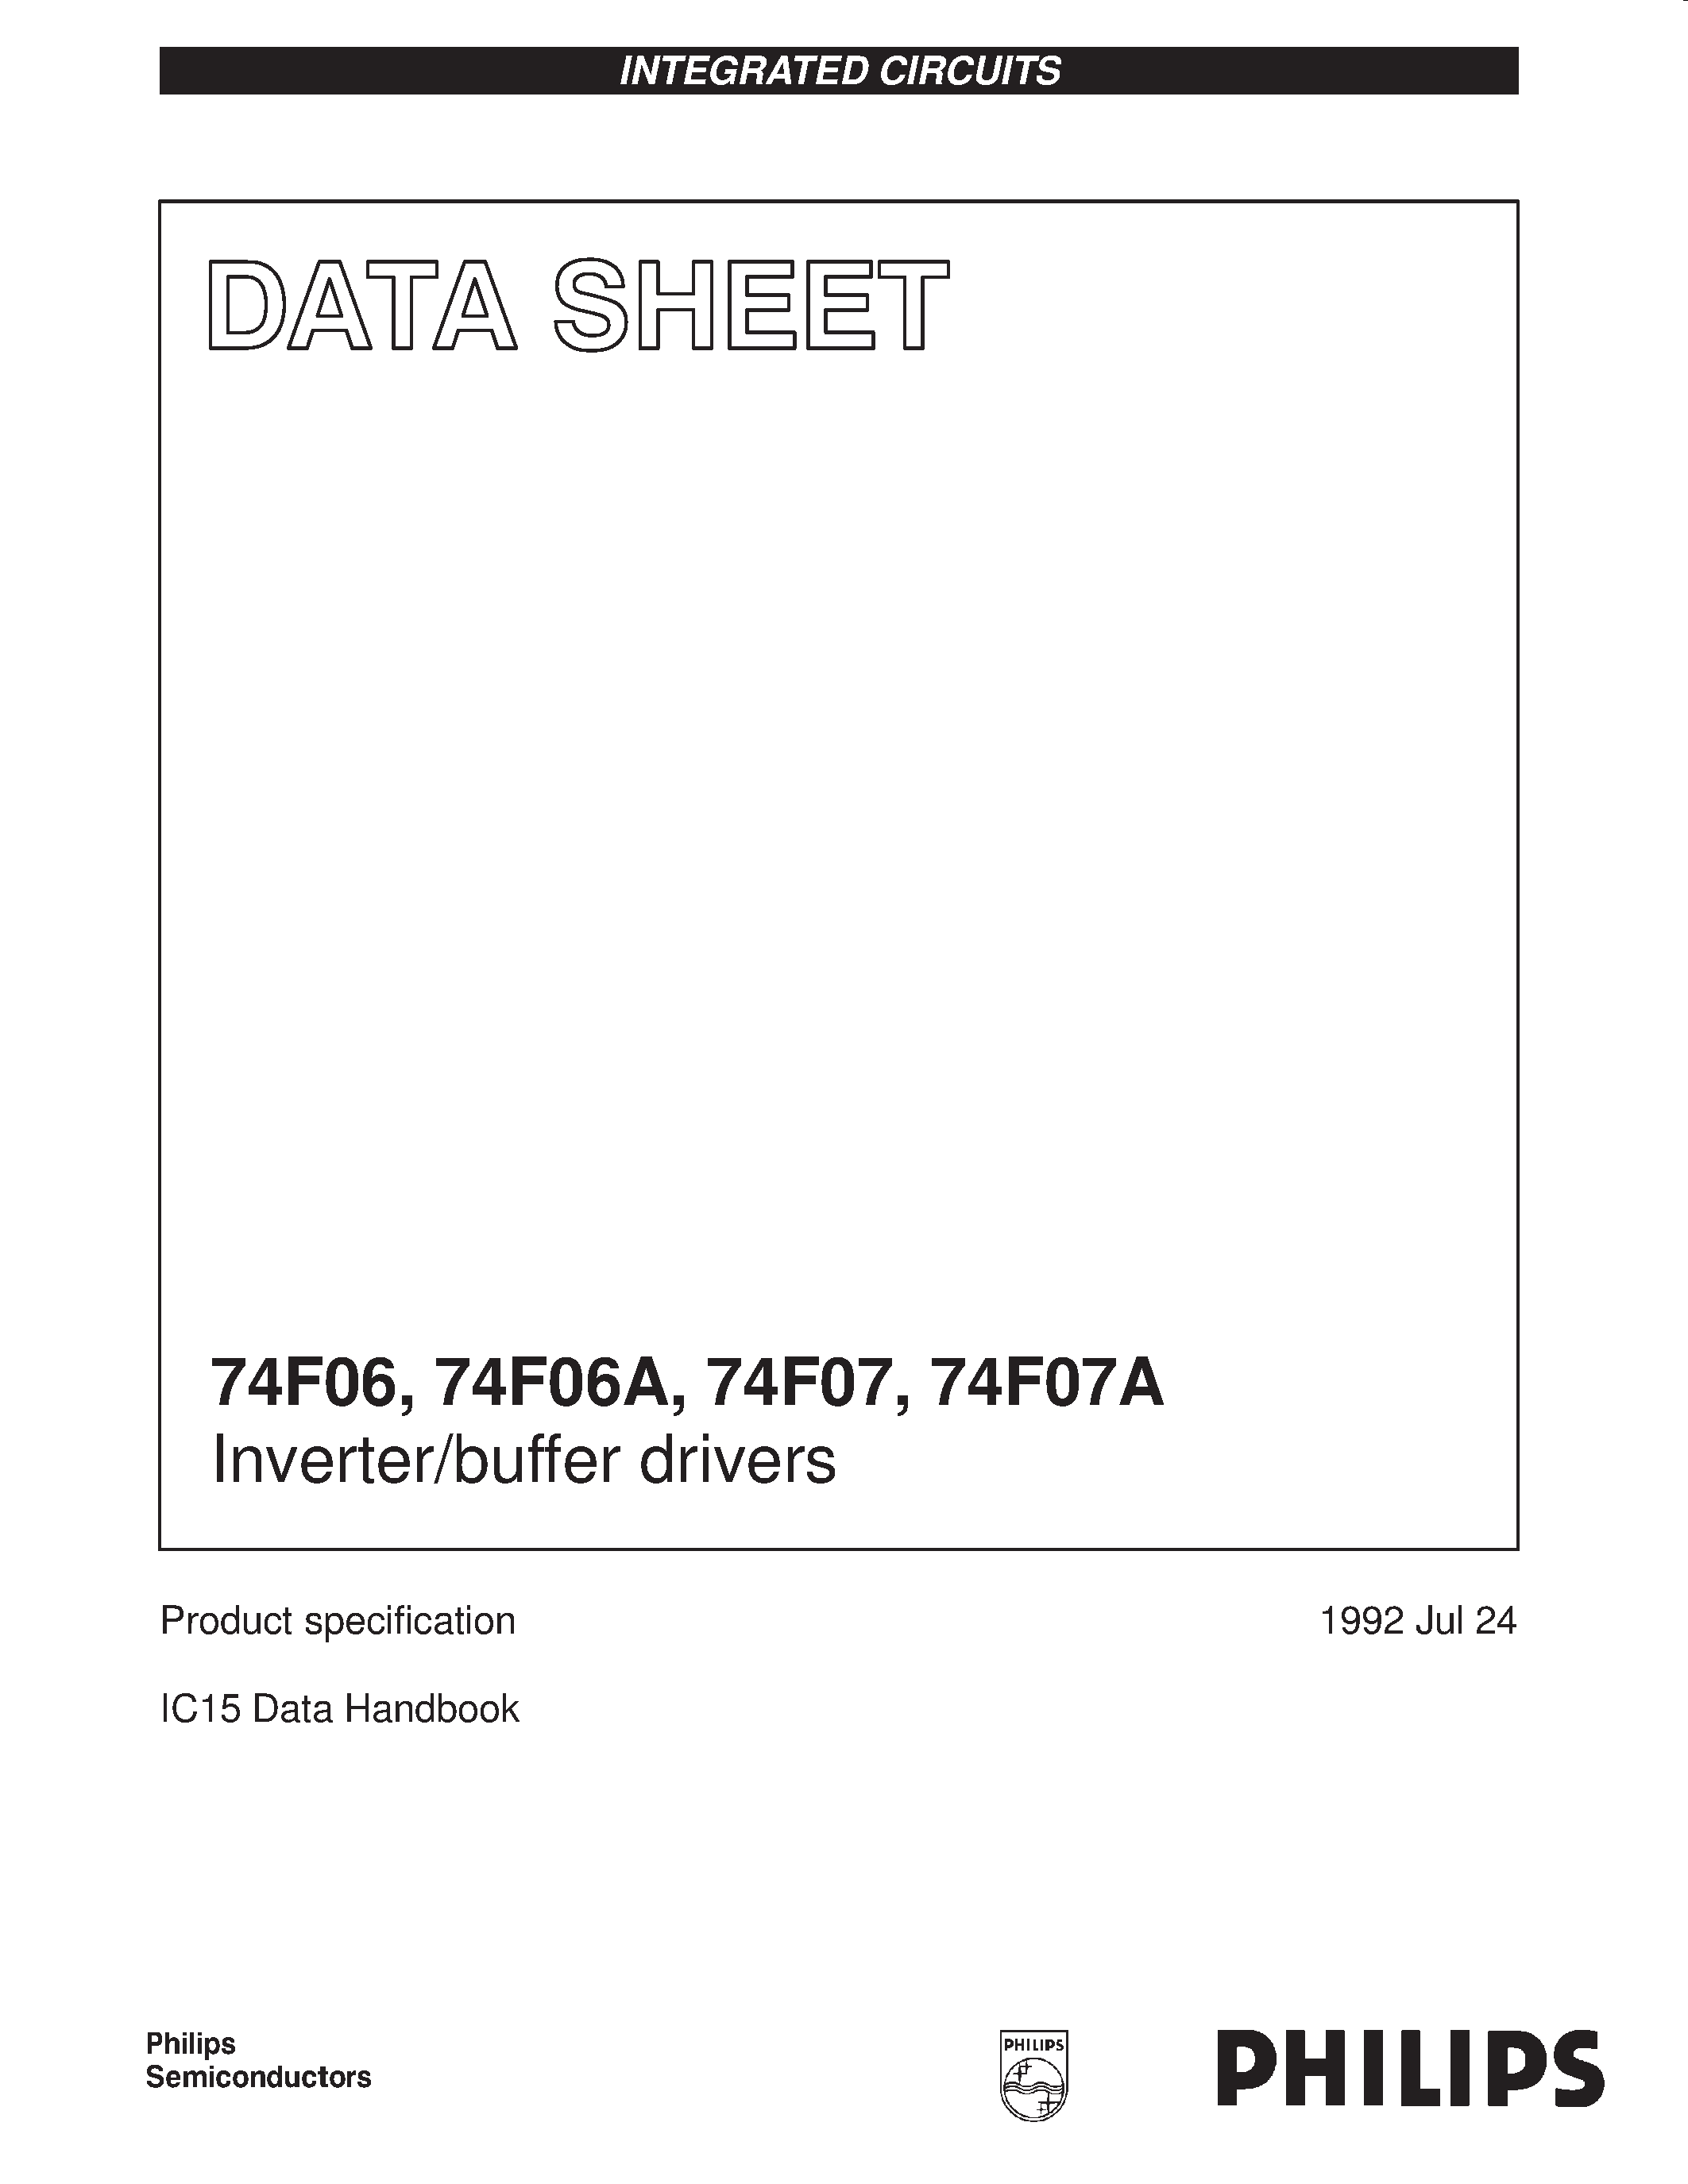 Даташит 74F07A - Inverter/buffer drivers страница 1